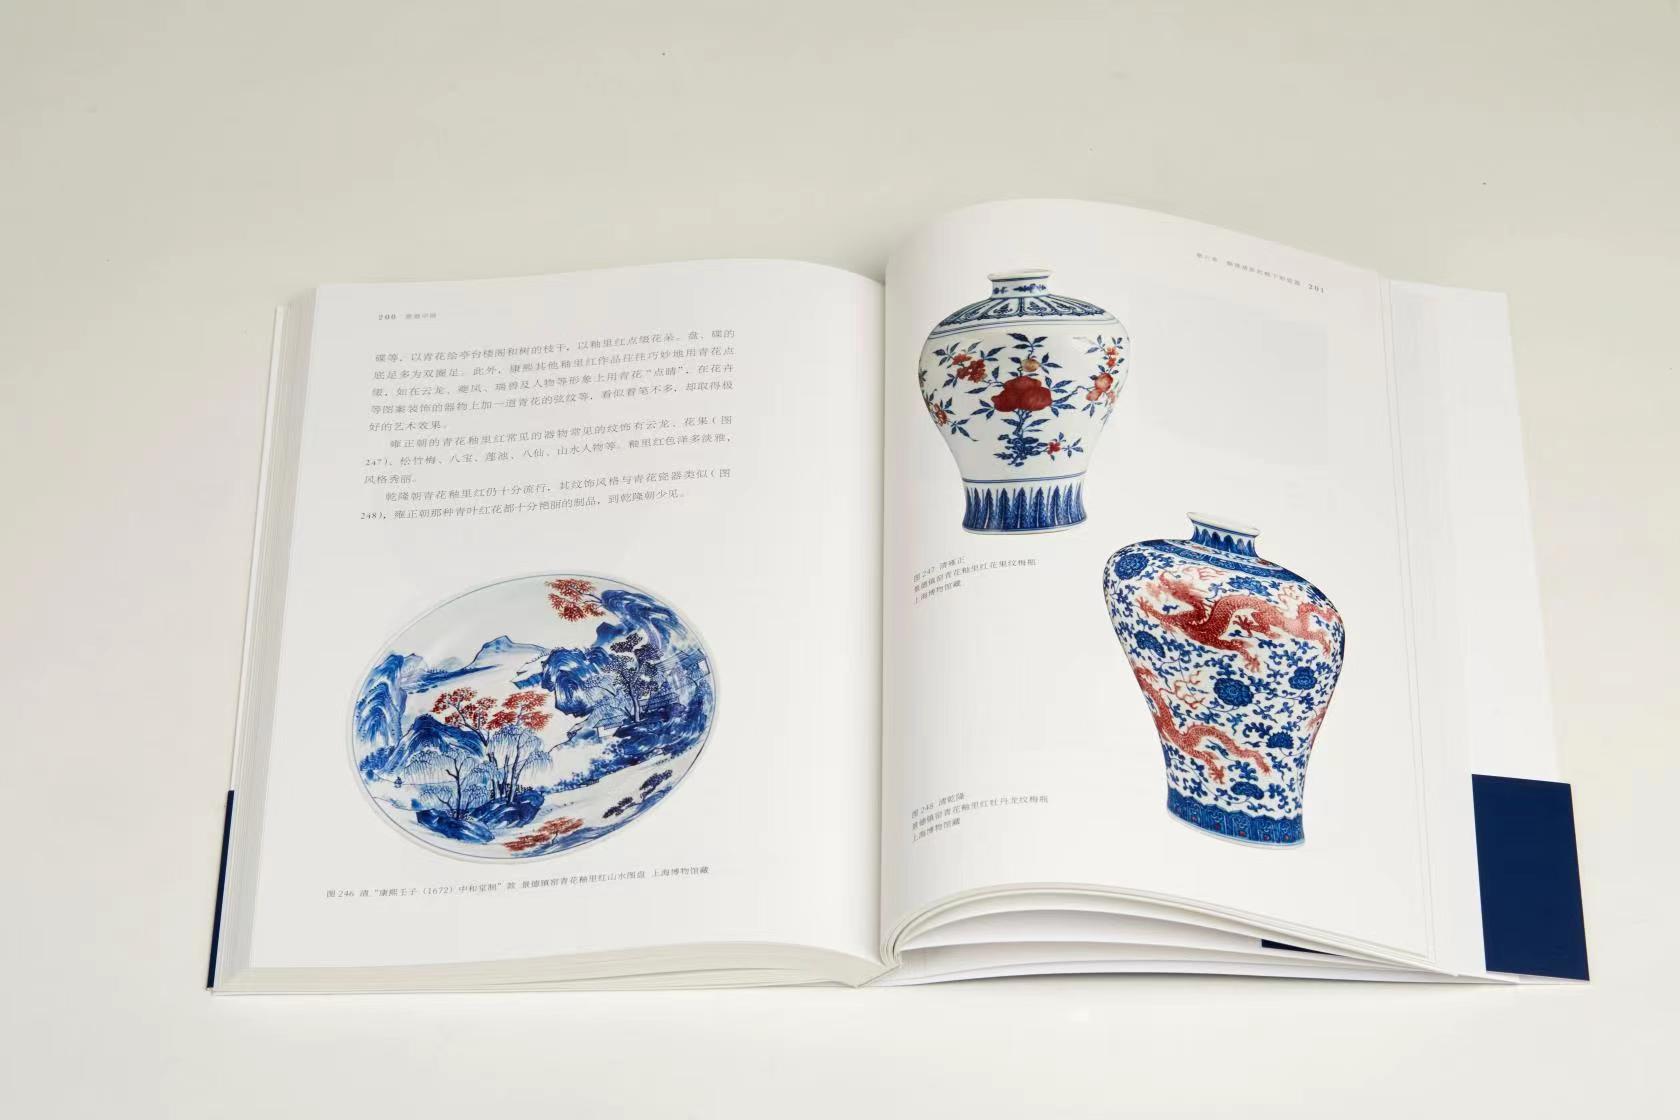 《瓷器中国》 陈克伦著 上海书画出版社出版